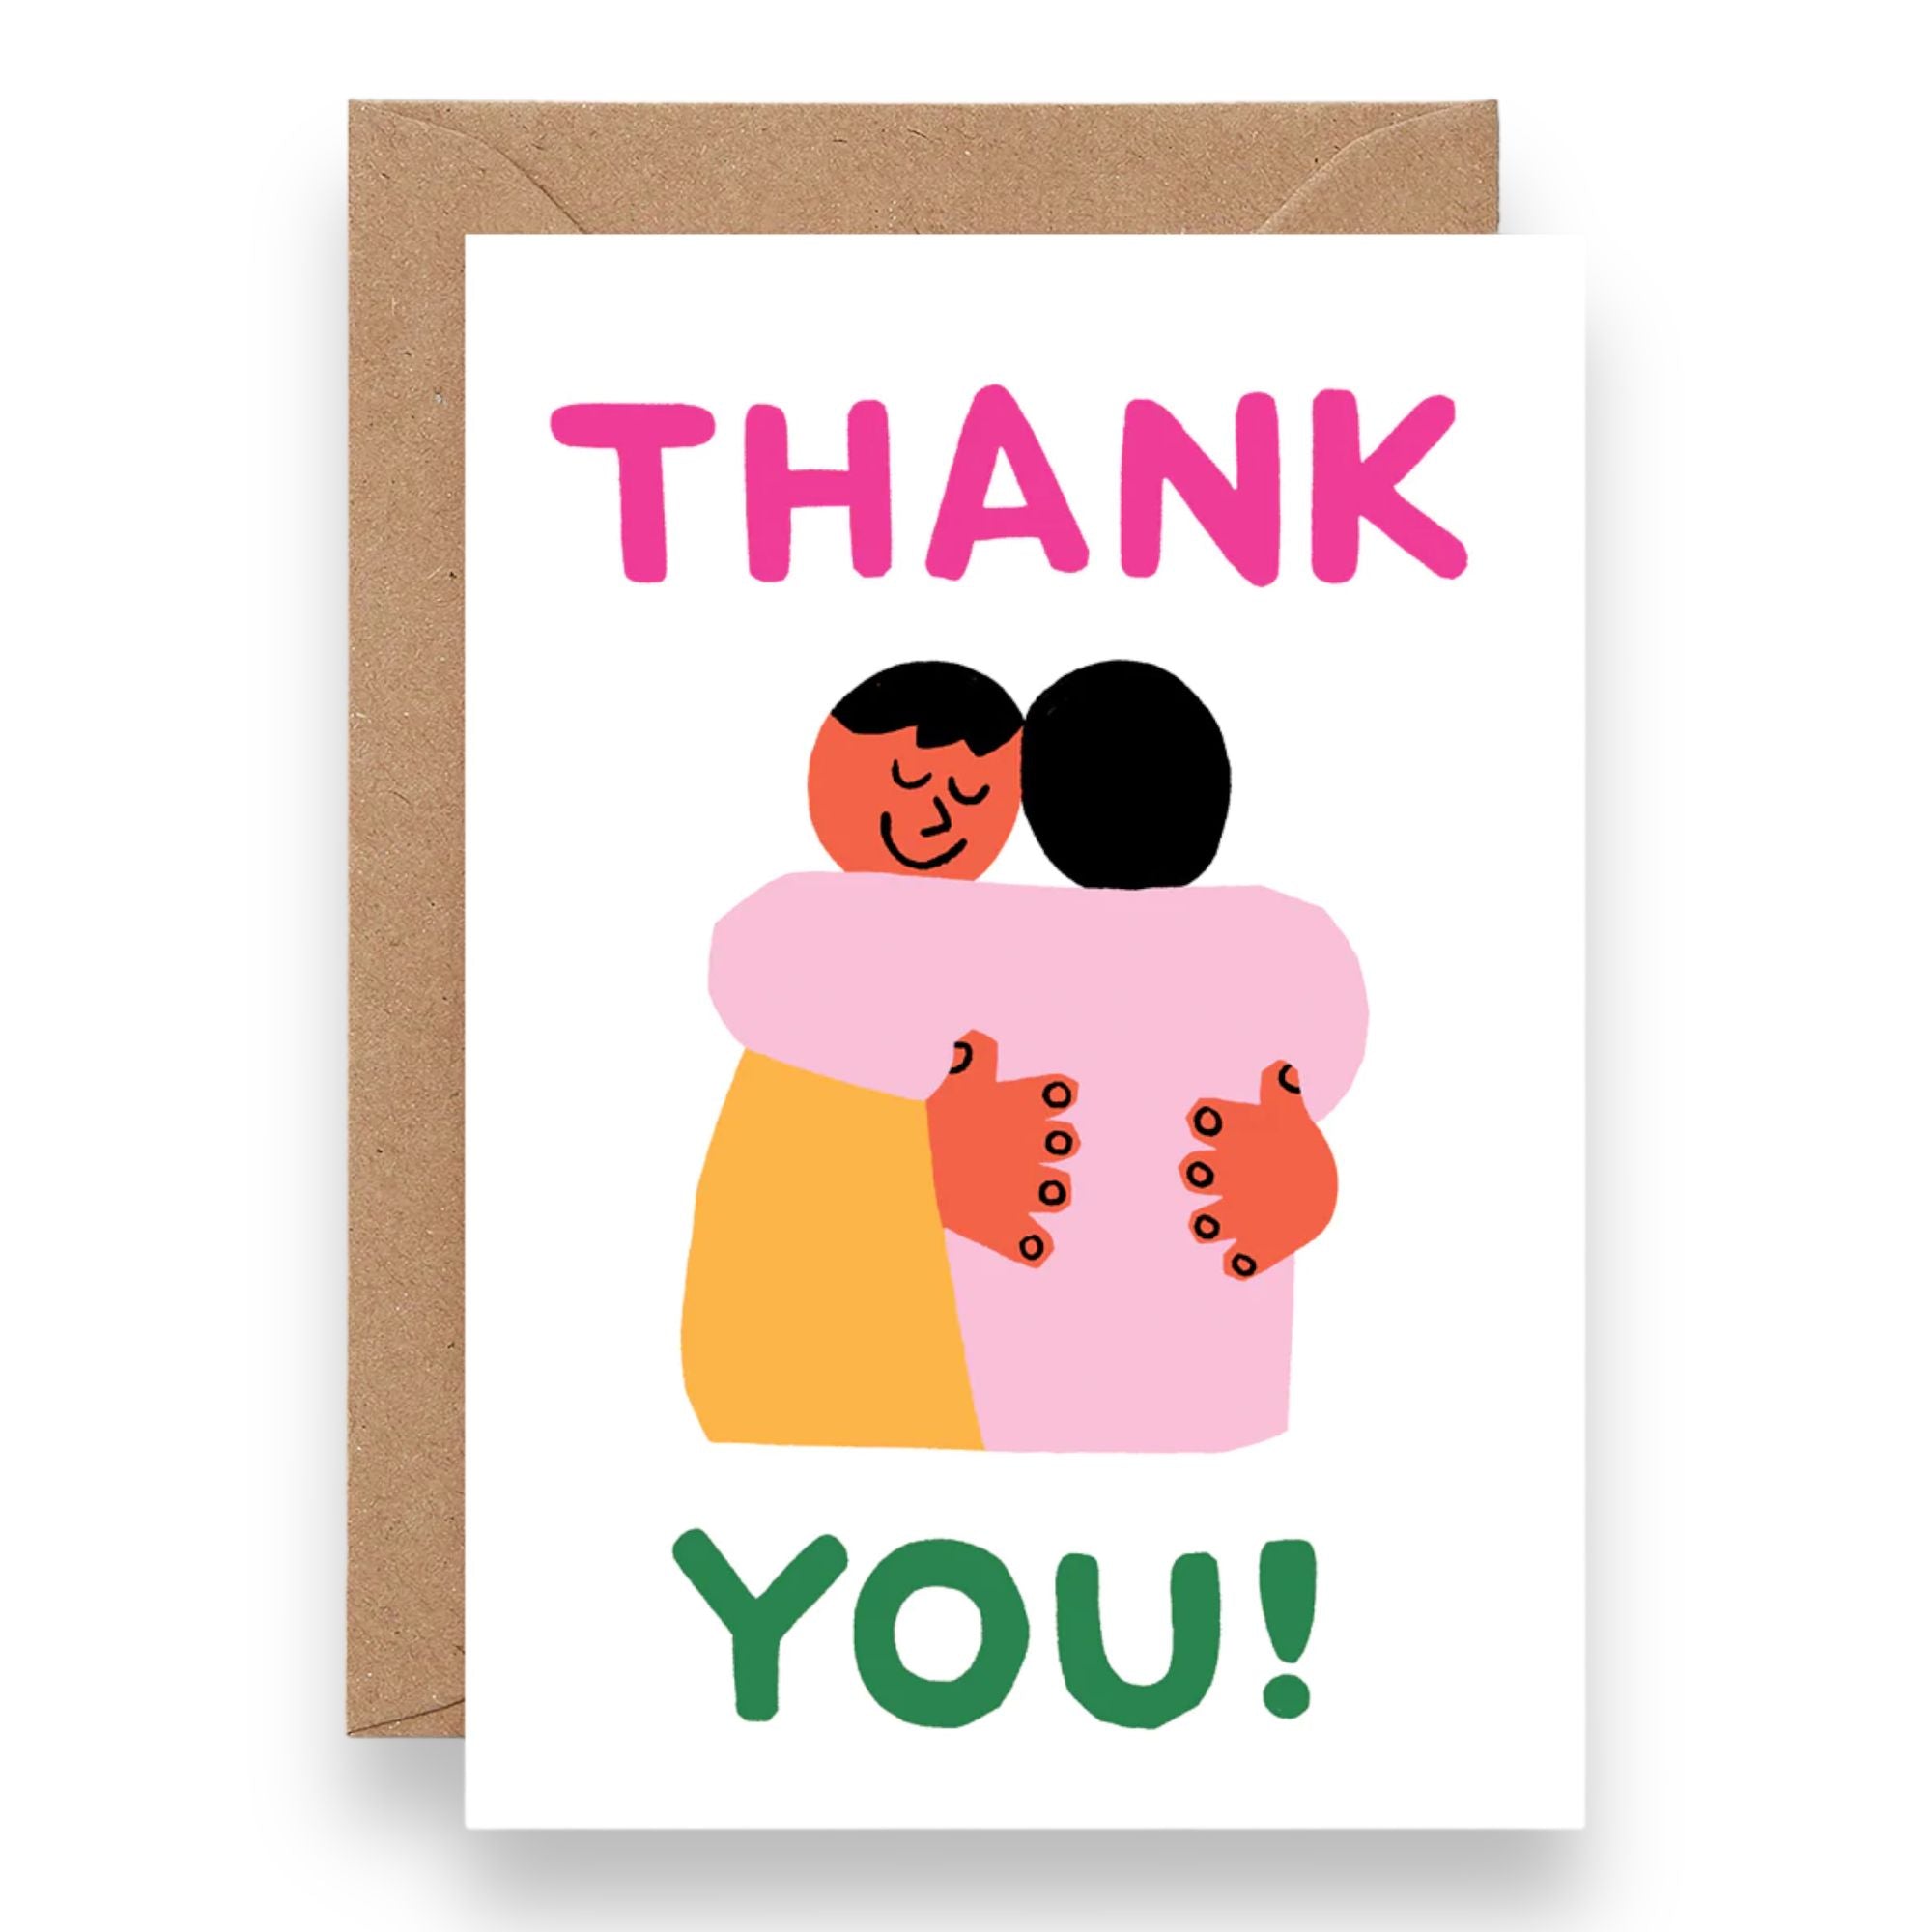 THANK YOU! HUG GREETINGS CARD